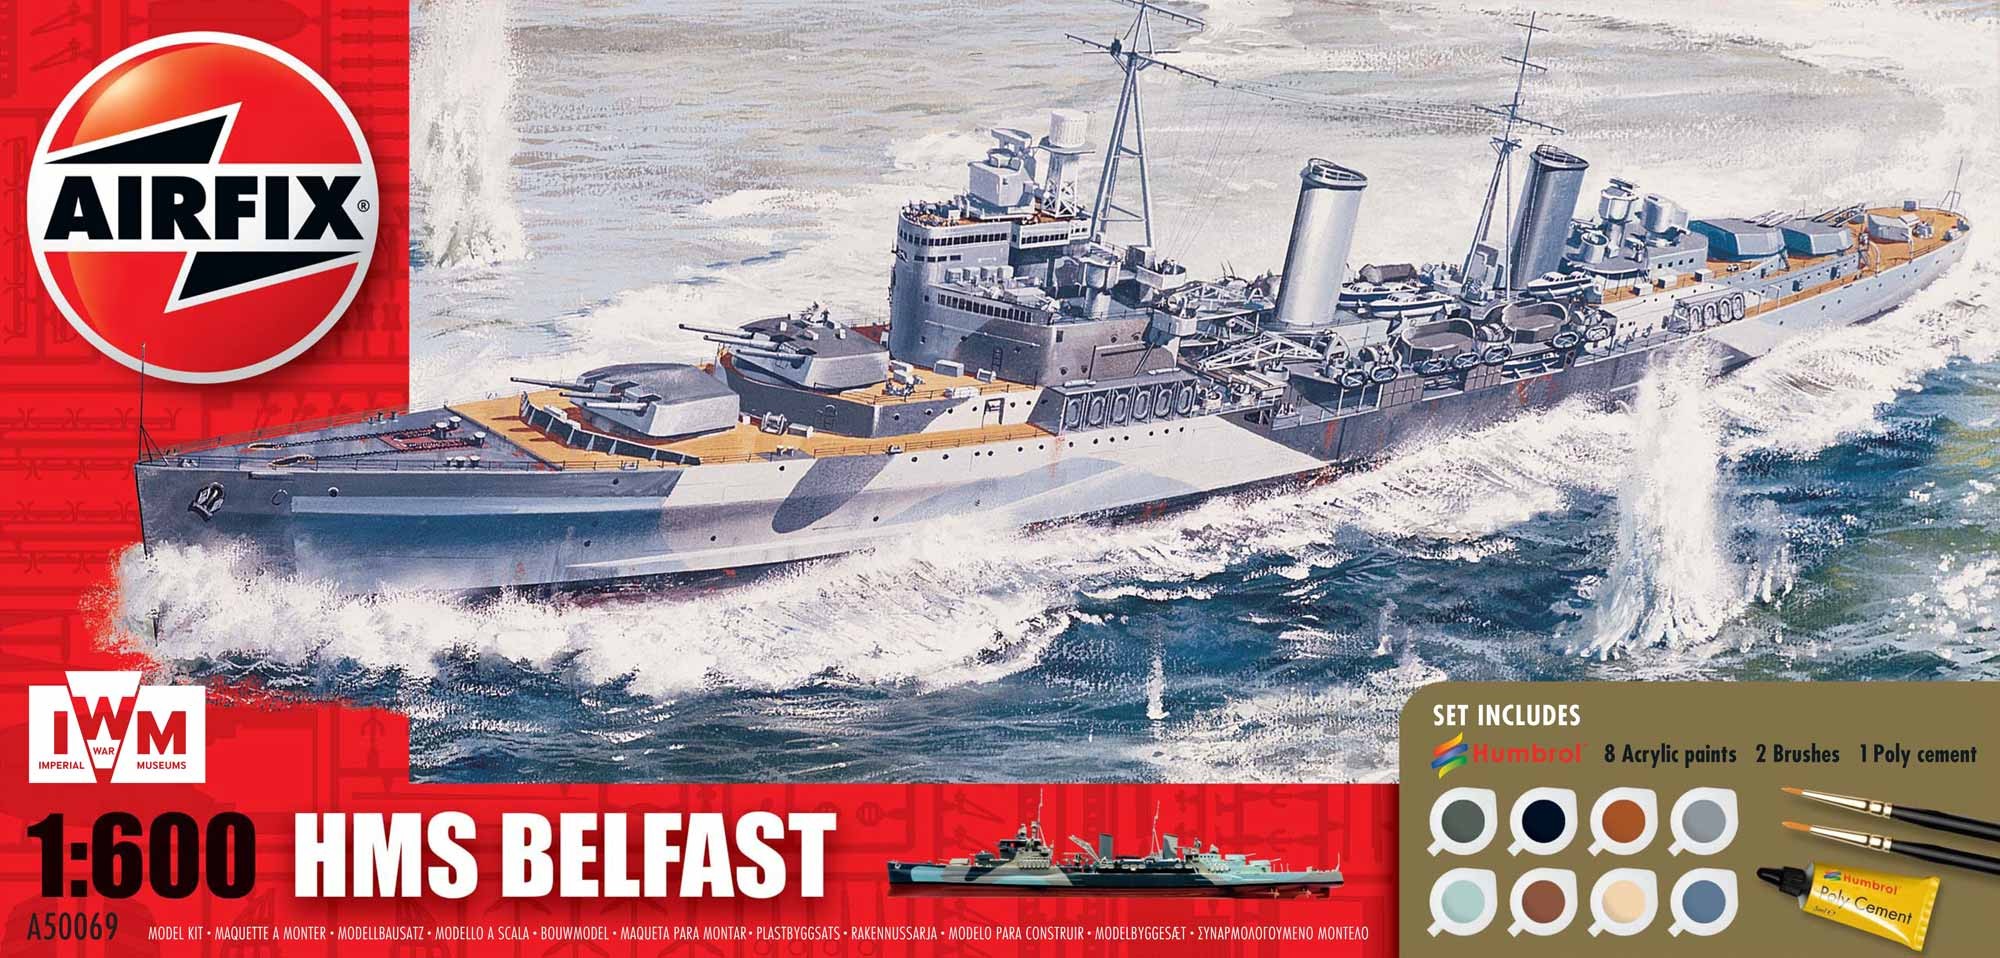 Airfix BLeichter Kreuzer HMS Belfast - 1:600 bouwpakket met lijm en verf